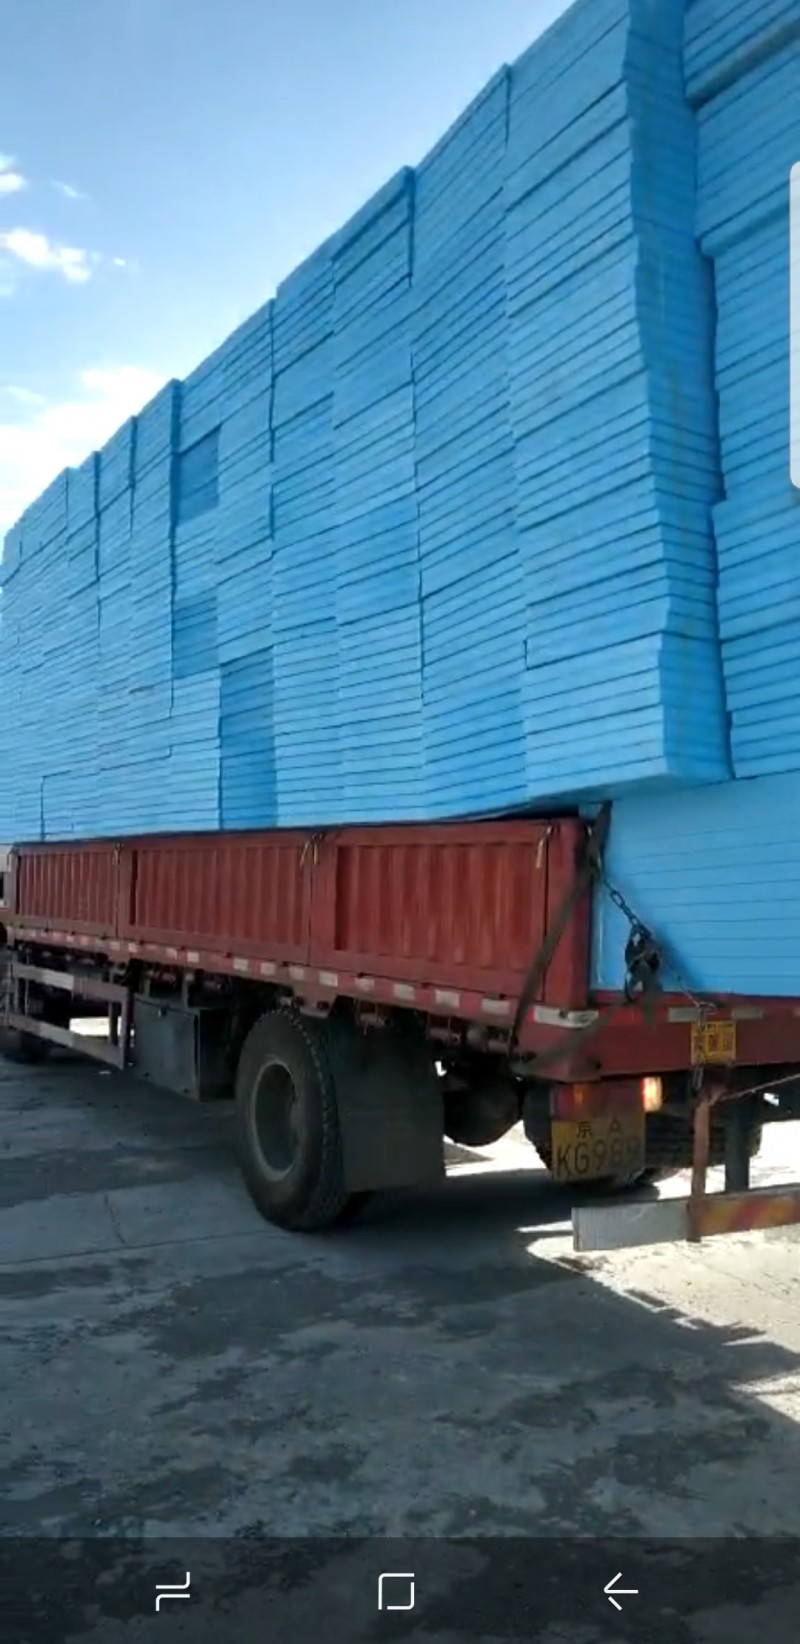 挤塑板  挤塑泡沫板  挤塑保温板-- 北京京都顺发保温材料有限公司